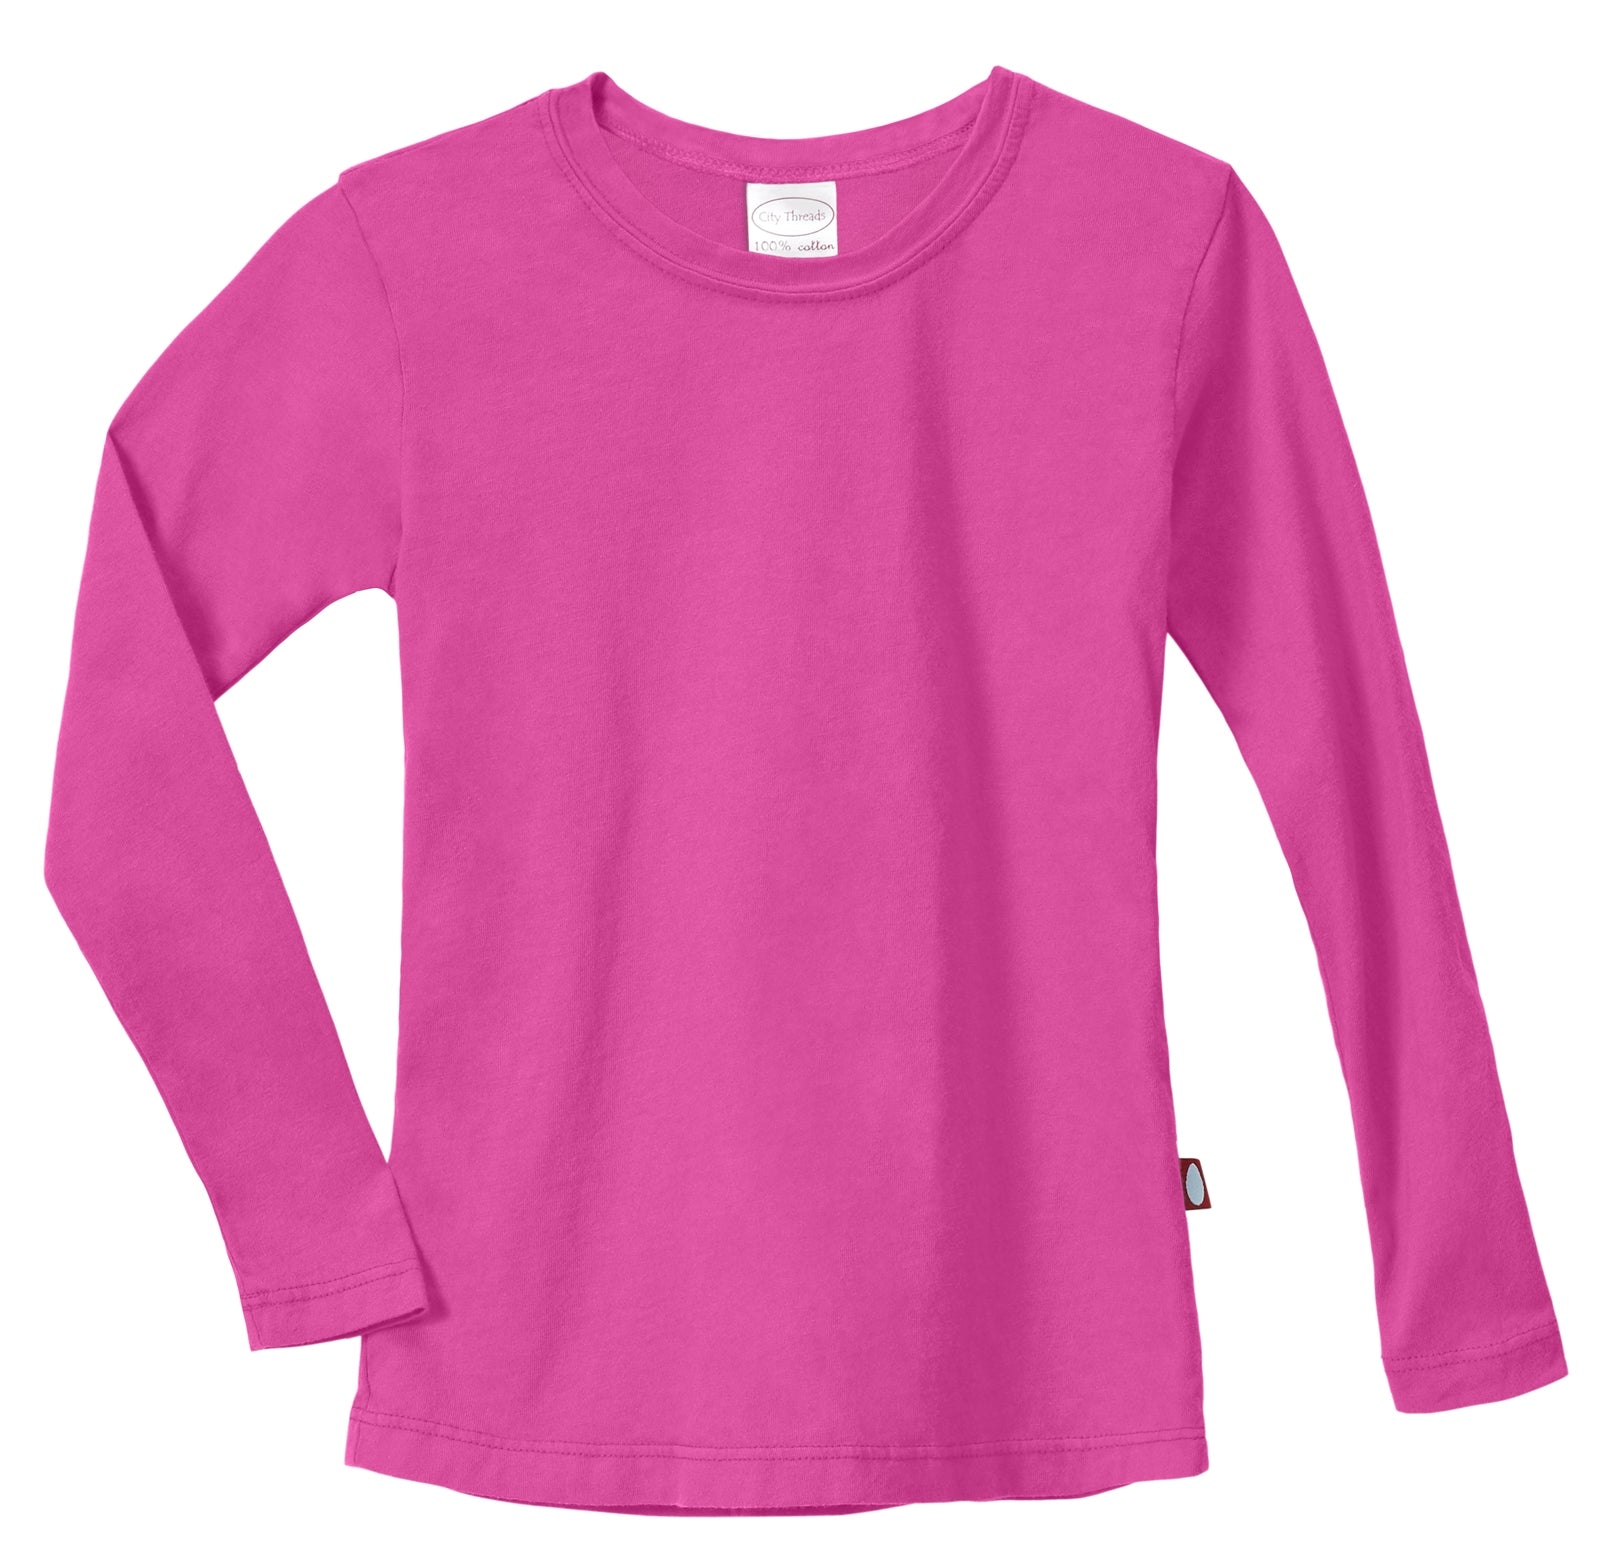 Girls Soft Cotton Jersey Long Sleeve Tee | Hot Pink